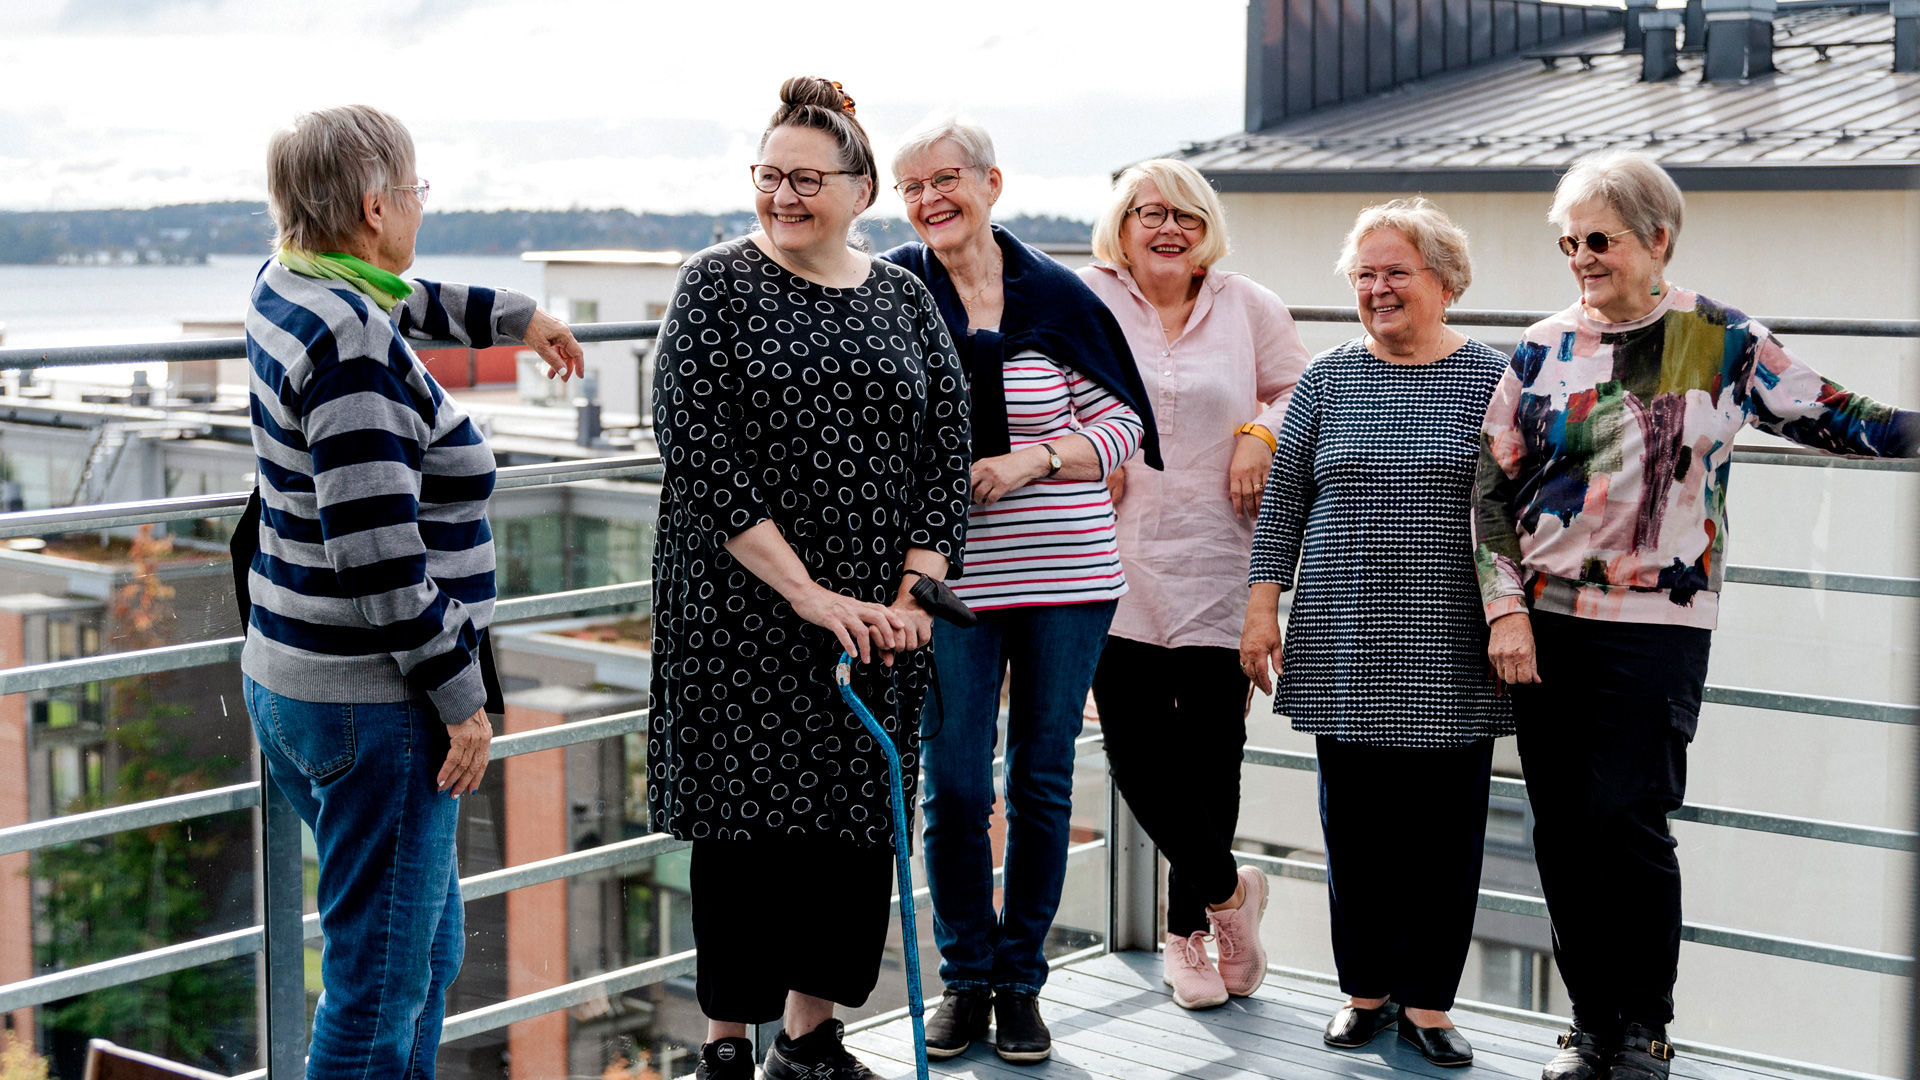 Yhteisöllisen senioritalon asukkaita kattoterassilla. Kuvassa kuusi varttunutta naista.